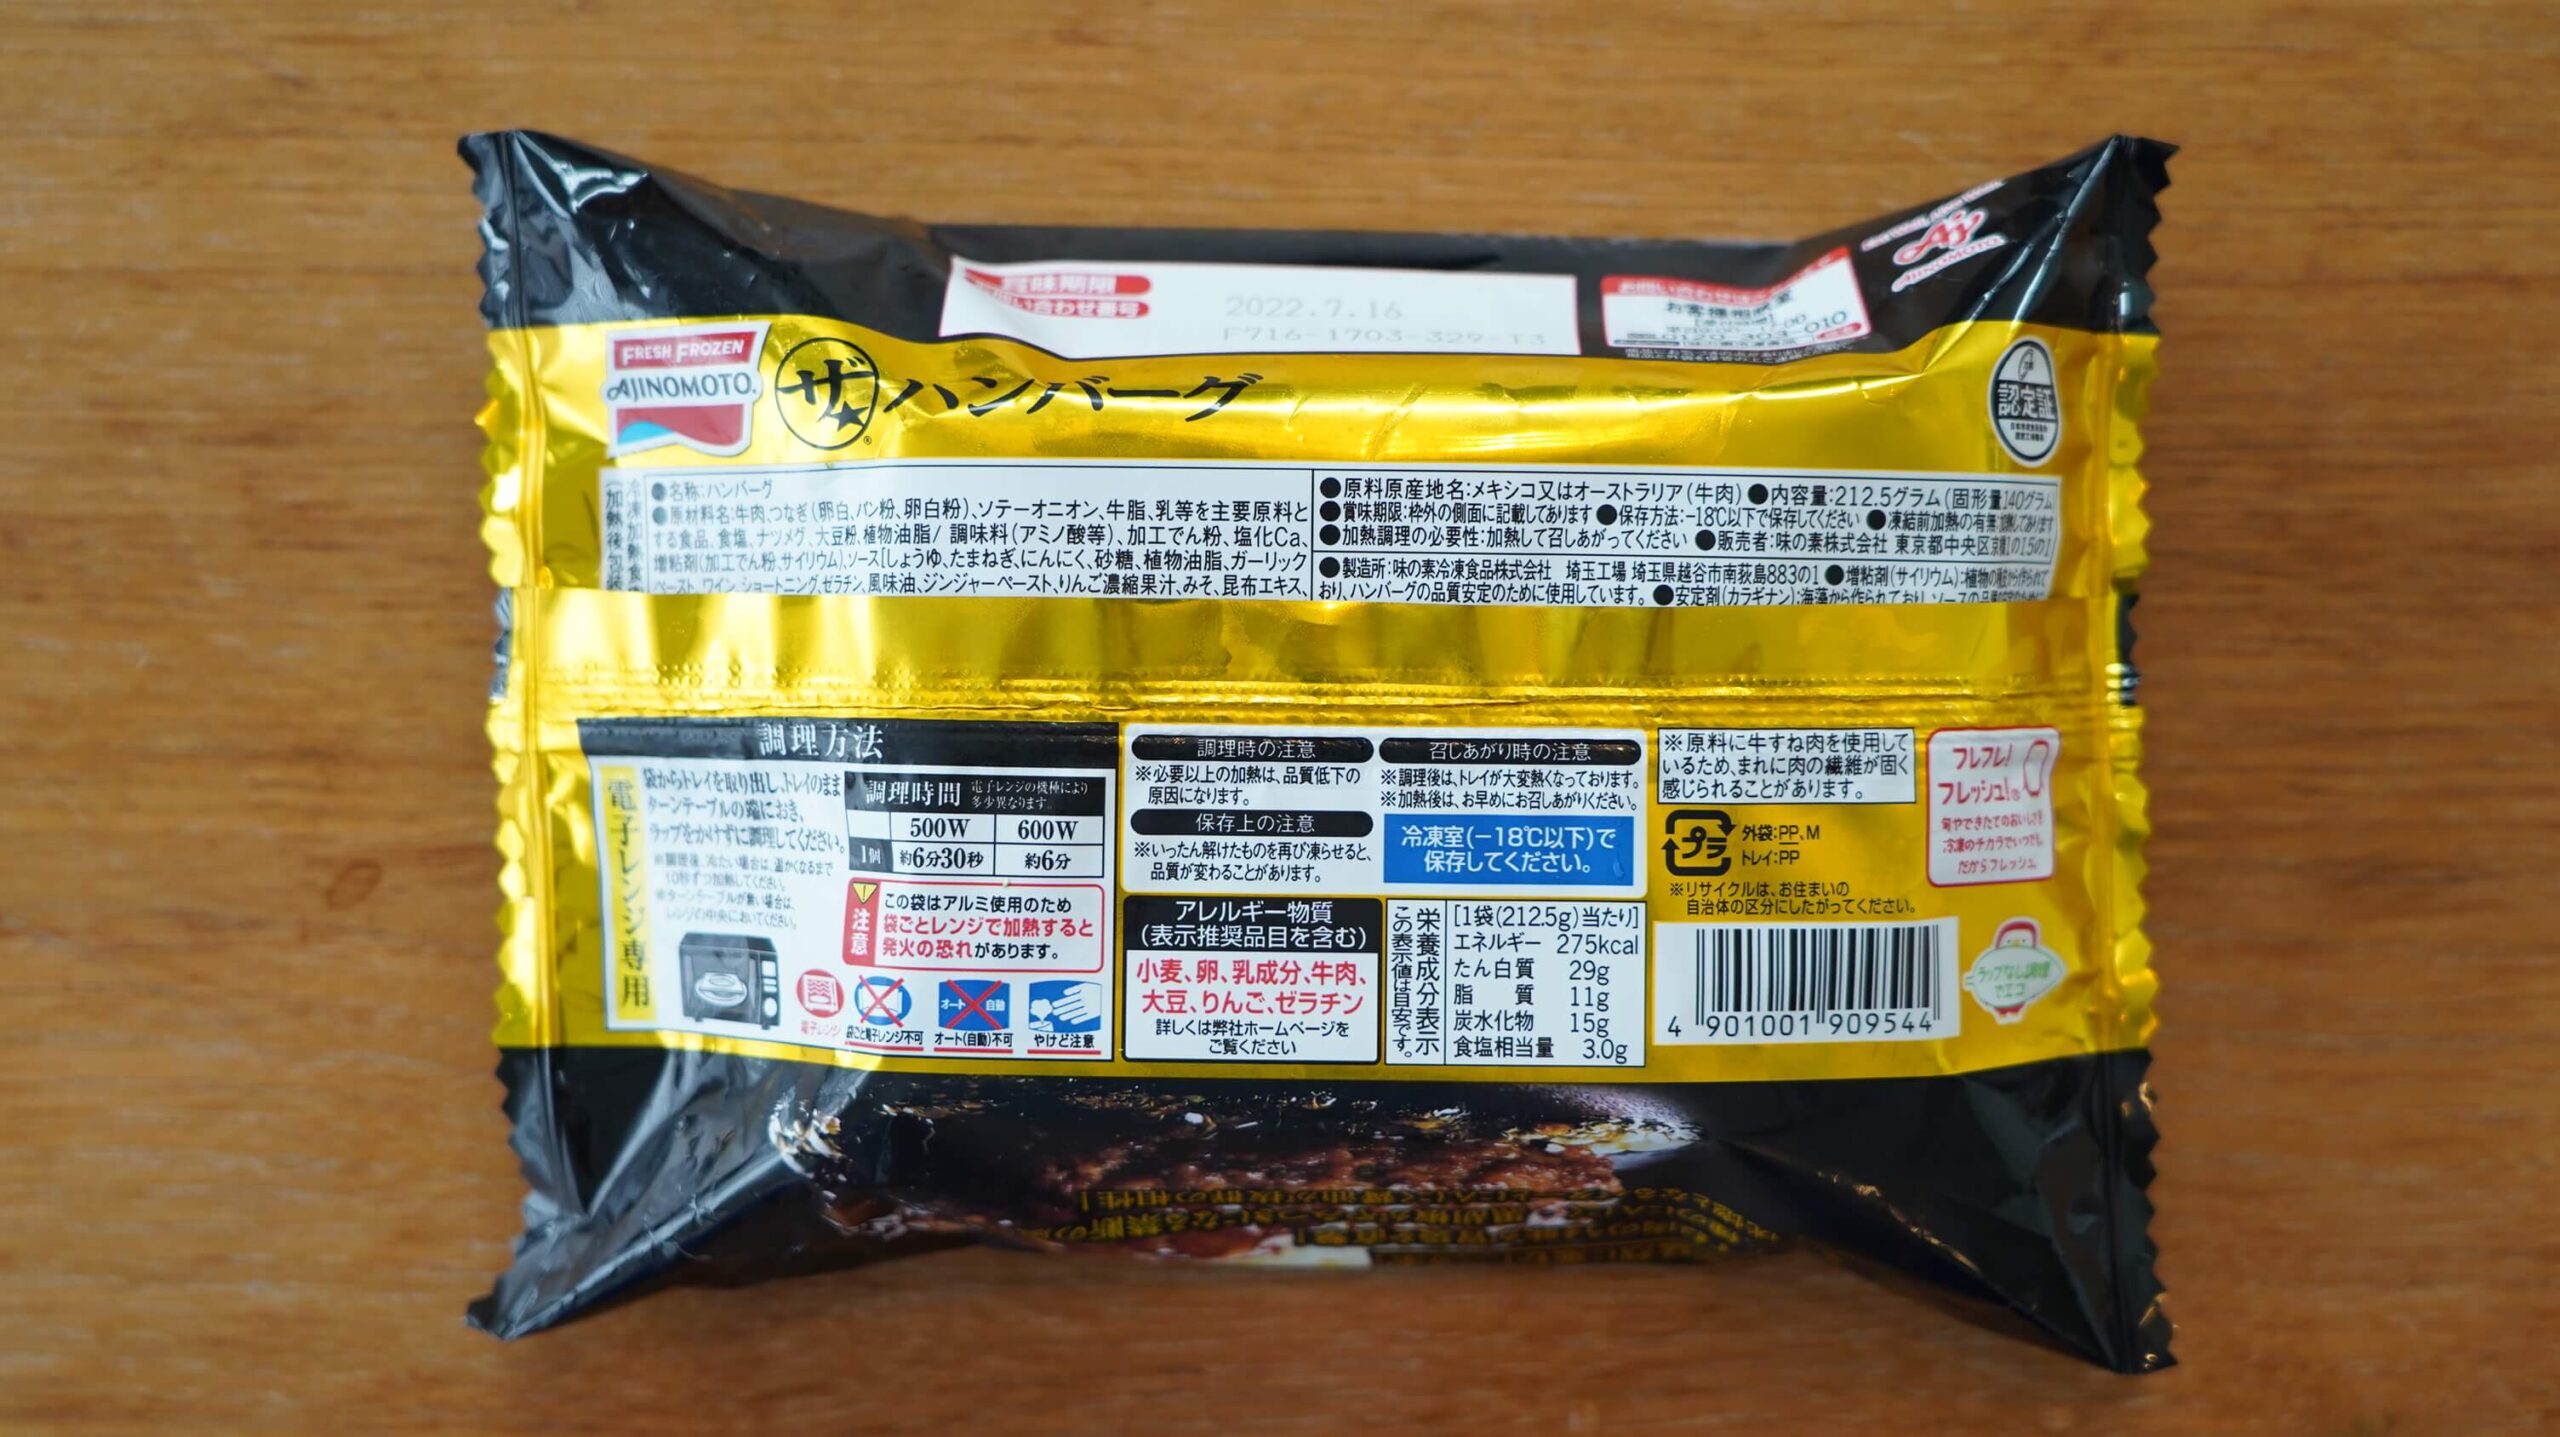 味の素の冷凍食品「ザ★ハンバーグ」のパッケージ裏面の写真